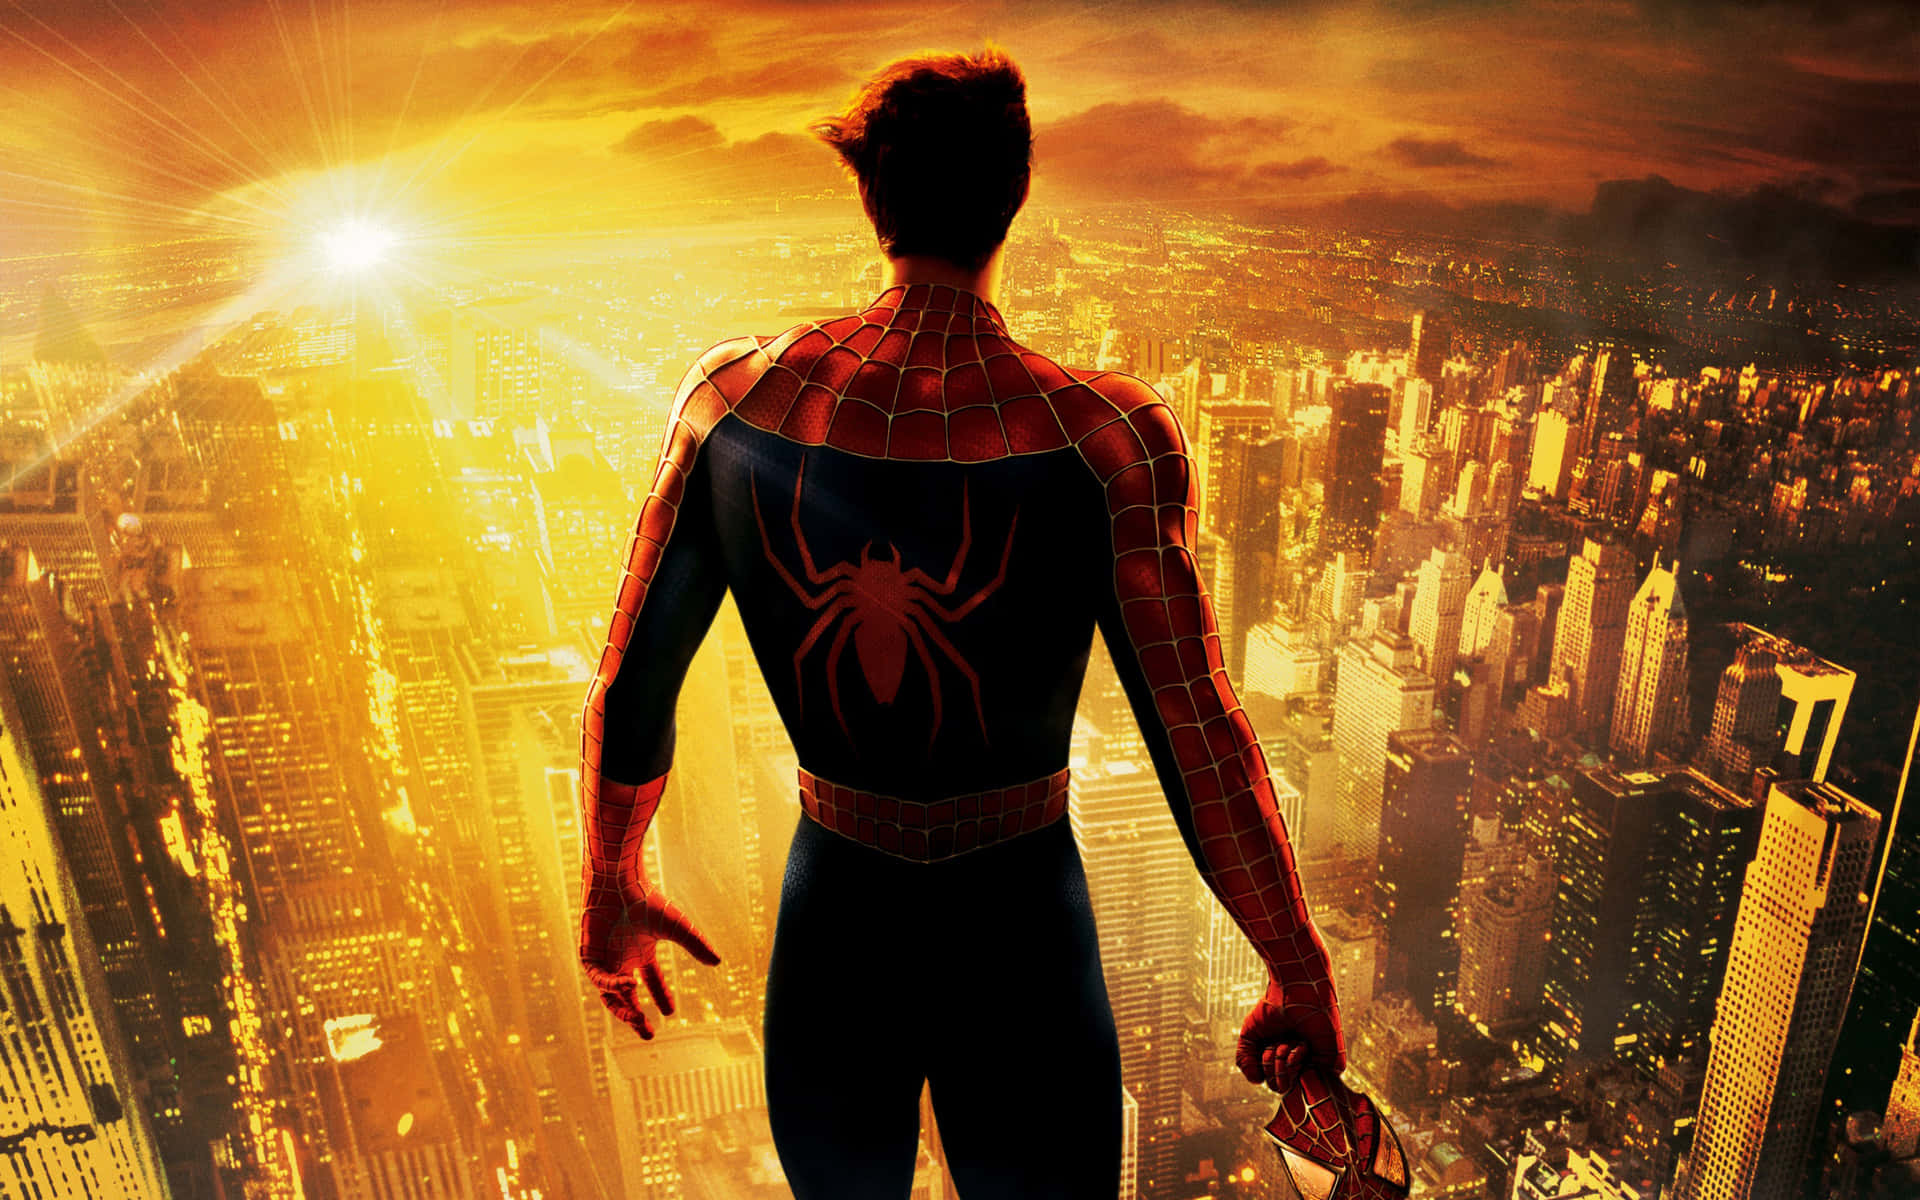 Marvelsspider-man Trilogie - Begleite Peter Parker In Seinem Epischen Kampf Gegen Das Böse. Wallpaper